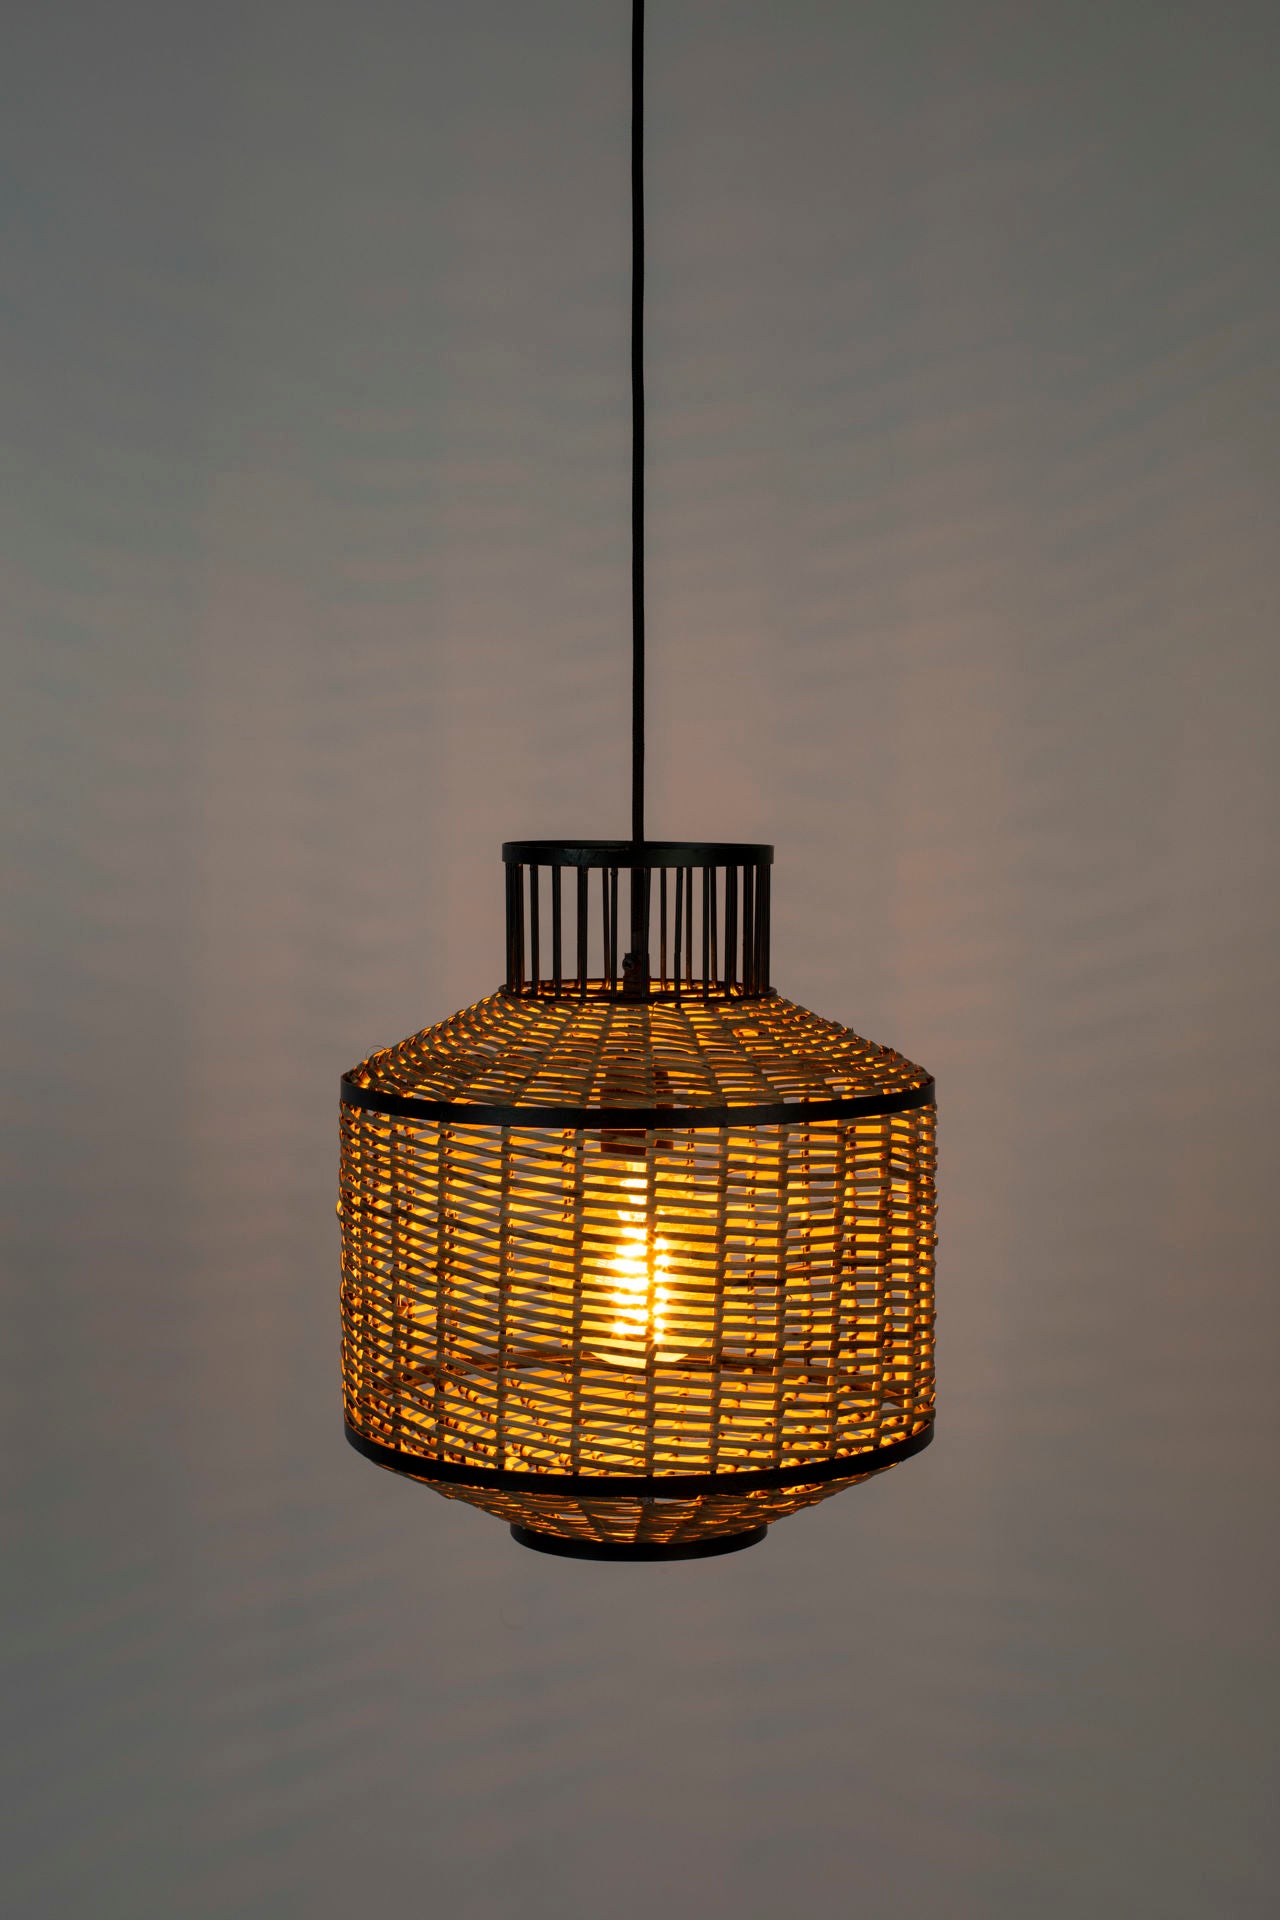 Lampe suspendue Nancy's Collegedale - Moderne - Noir, Naturel, Marron - Acier, Osier, PVC - 30 cm x 30 cm x 145 cm